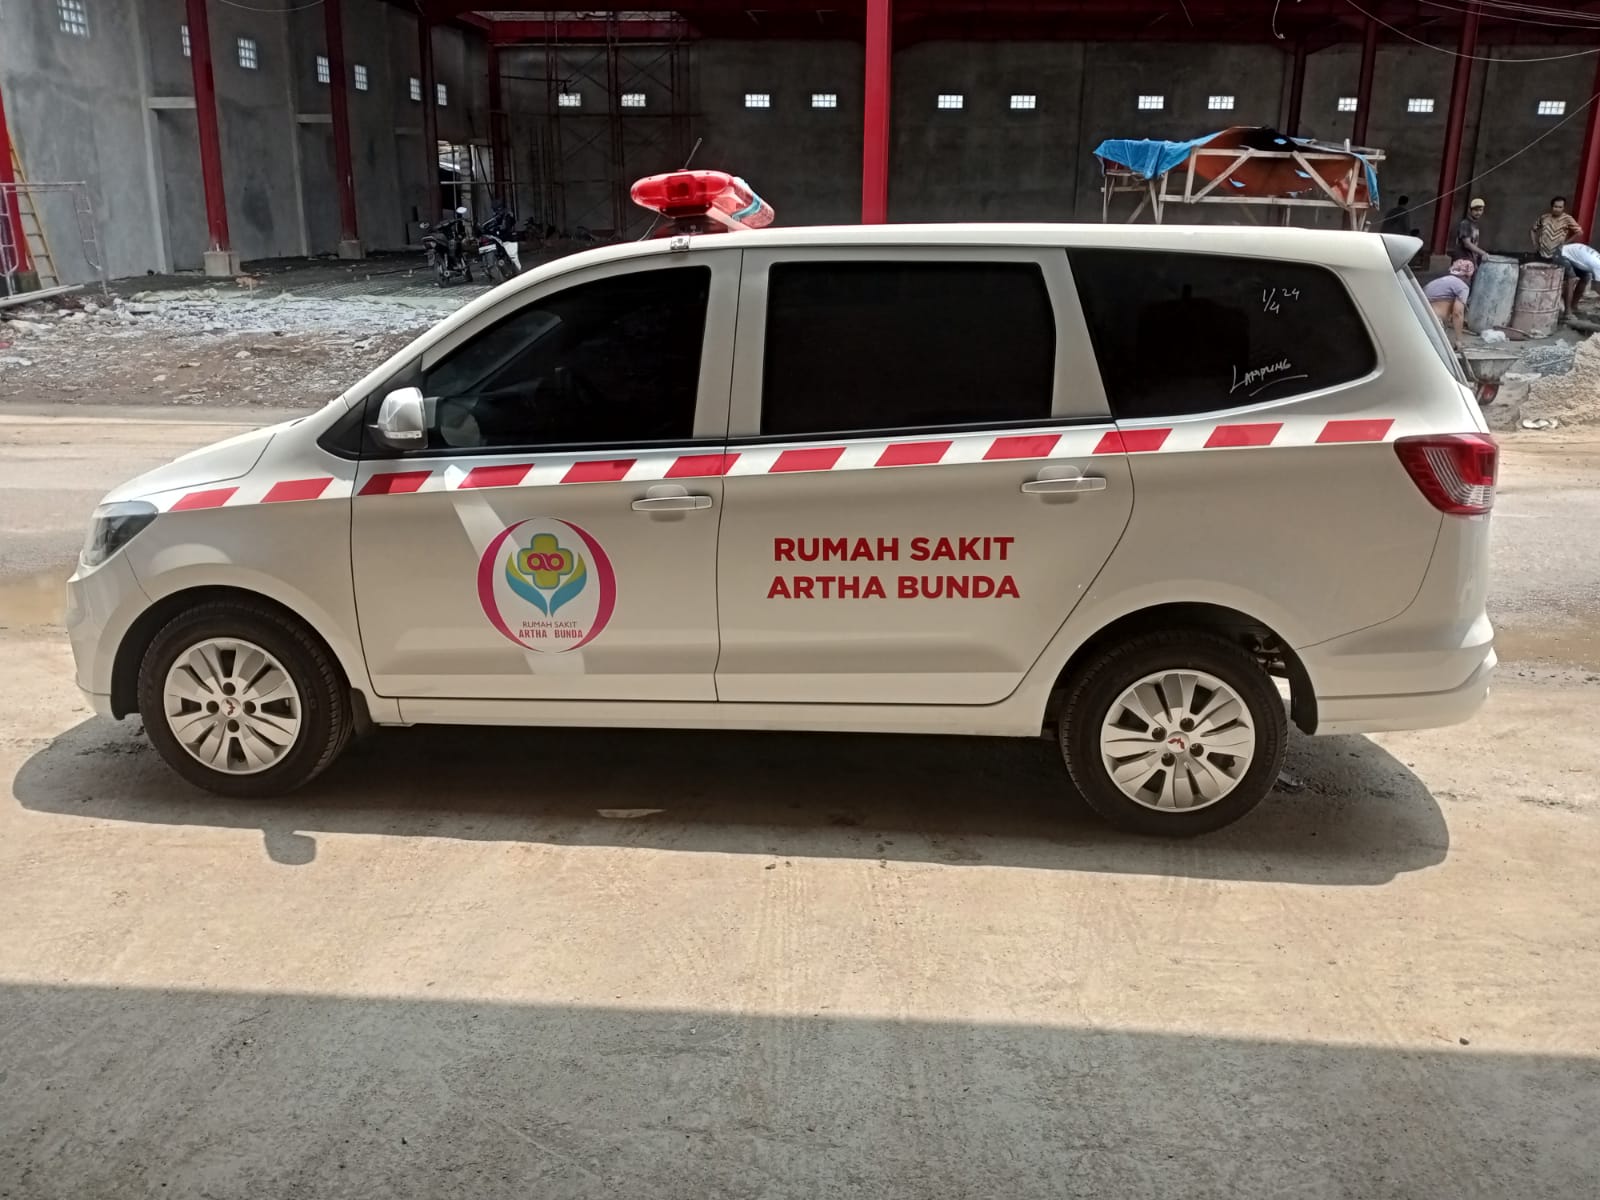 Harga Bengkel Karoseri Ambulance Berkualitas Pasuruan